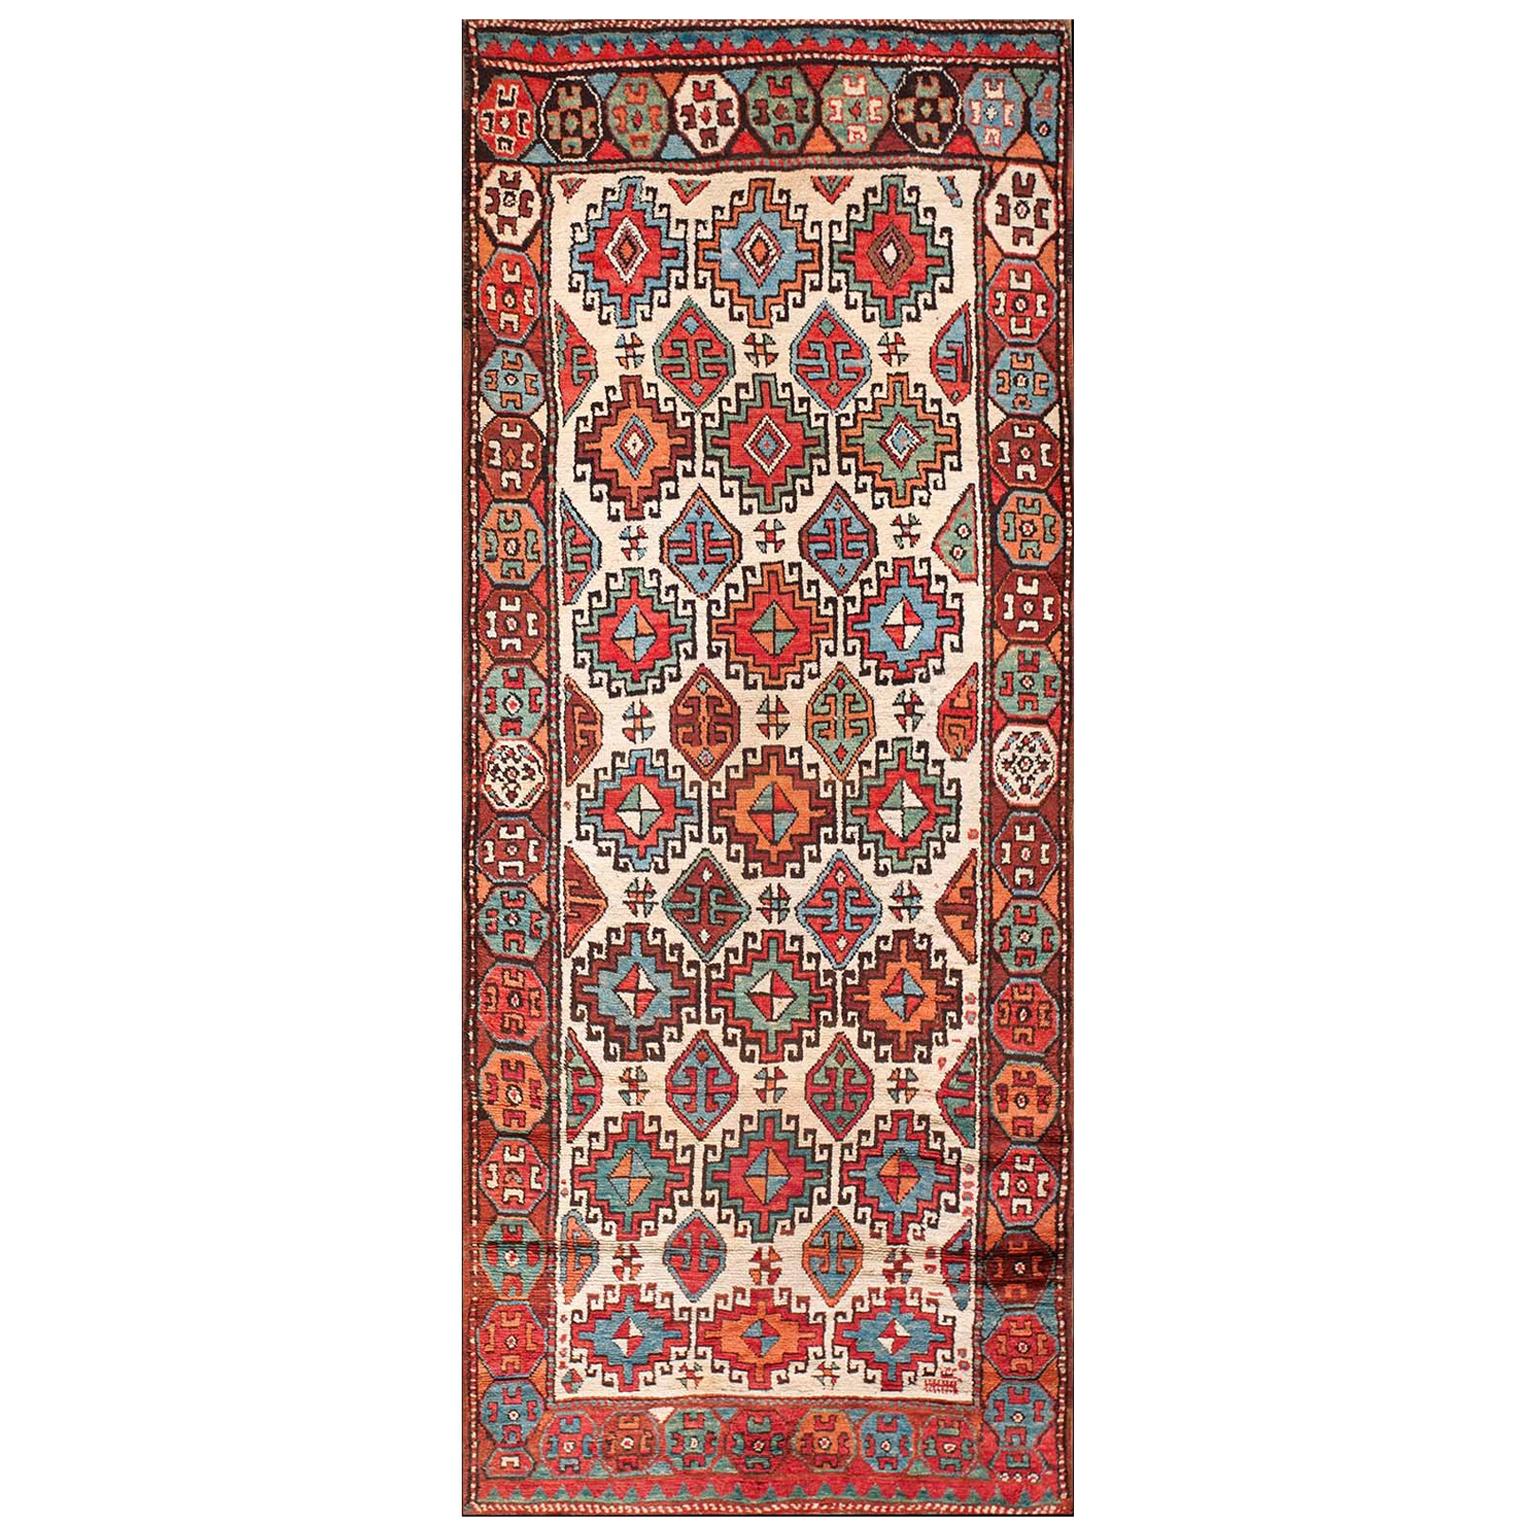 Mitte des 19. Jahrhunderts N.W. Persischer Teppich ( 3'10" x 9'4" - 117 x 285)